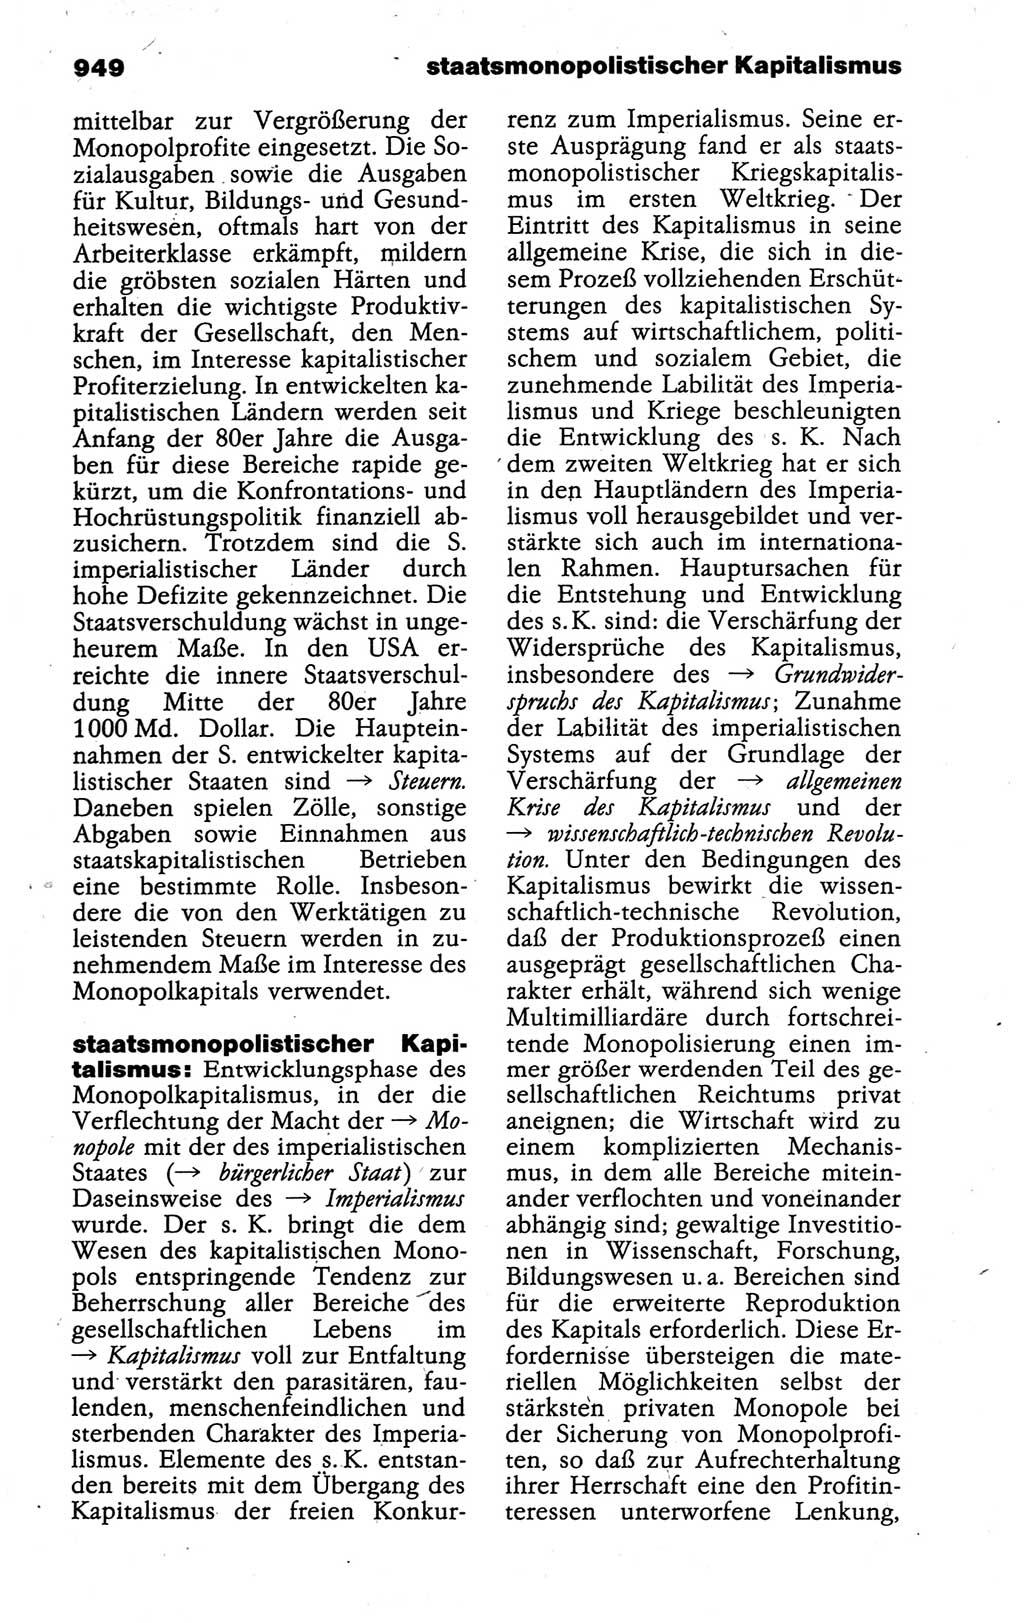 Kleines politisches Wörterbuch [Deutsche Demokratische Republik (DDR)] 1988, Seite 949 (Kl. pol. Wb. DDR 1988, S. 949)